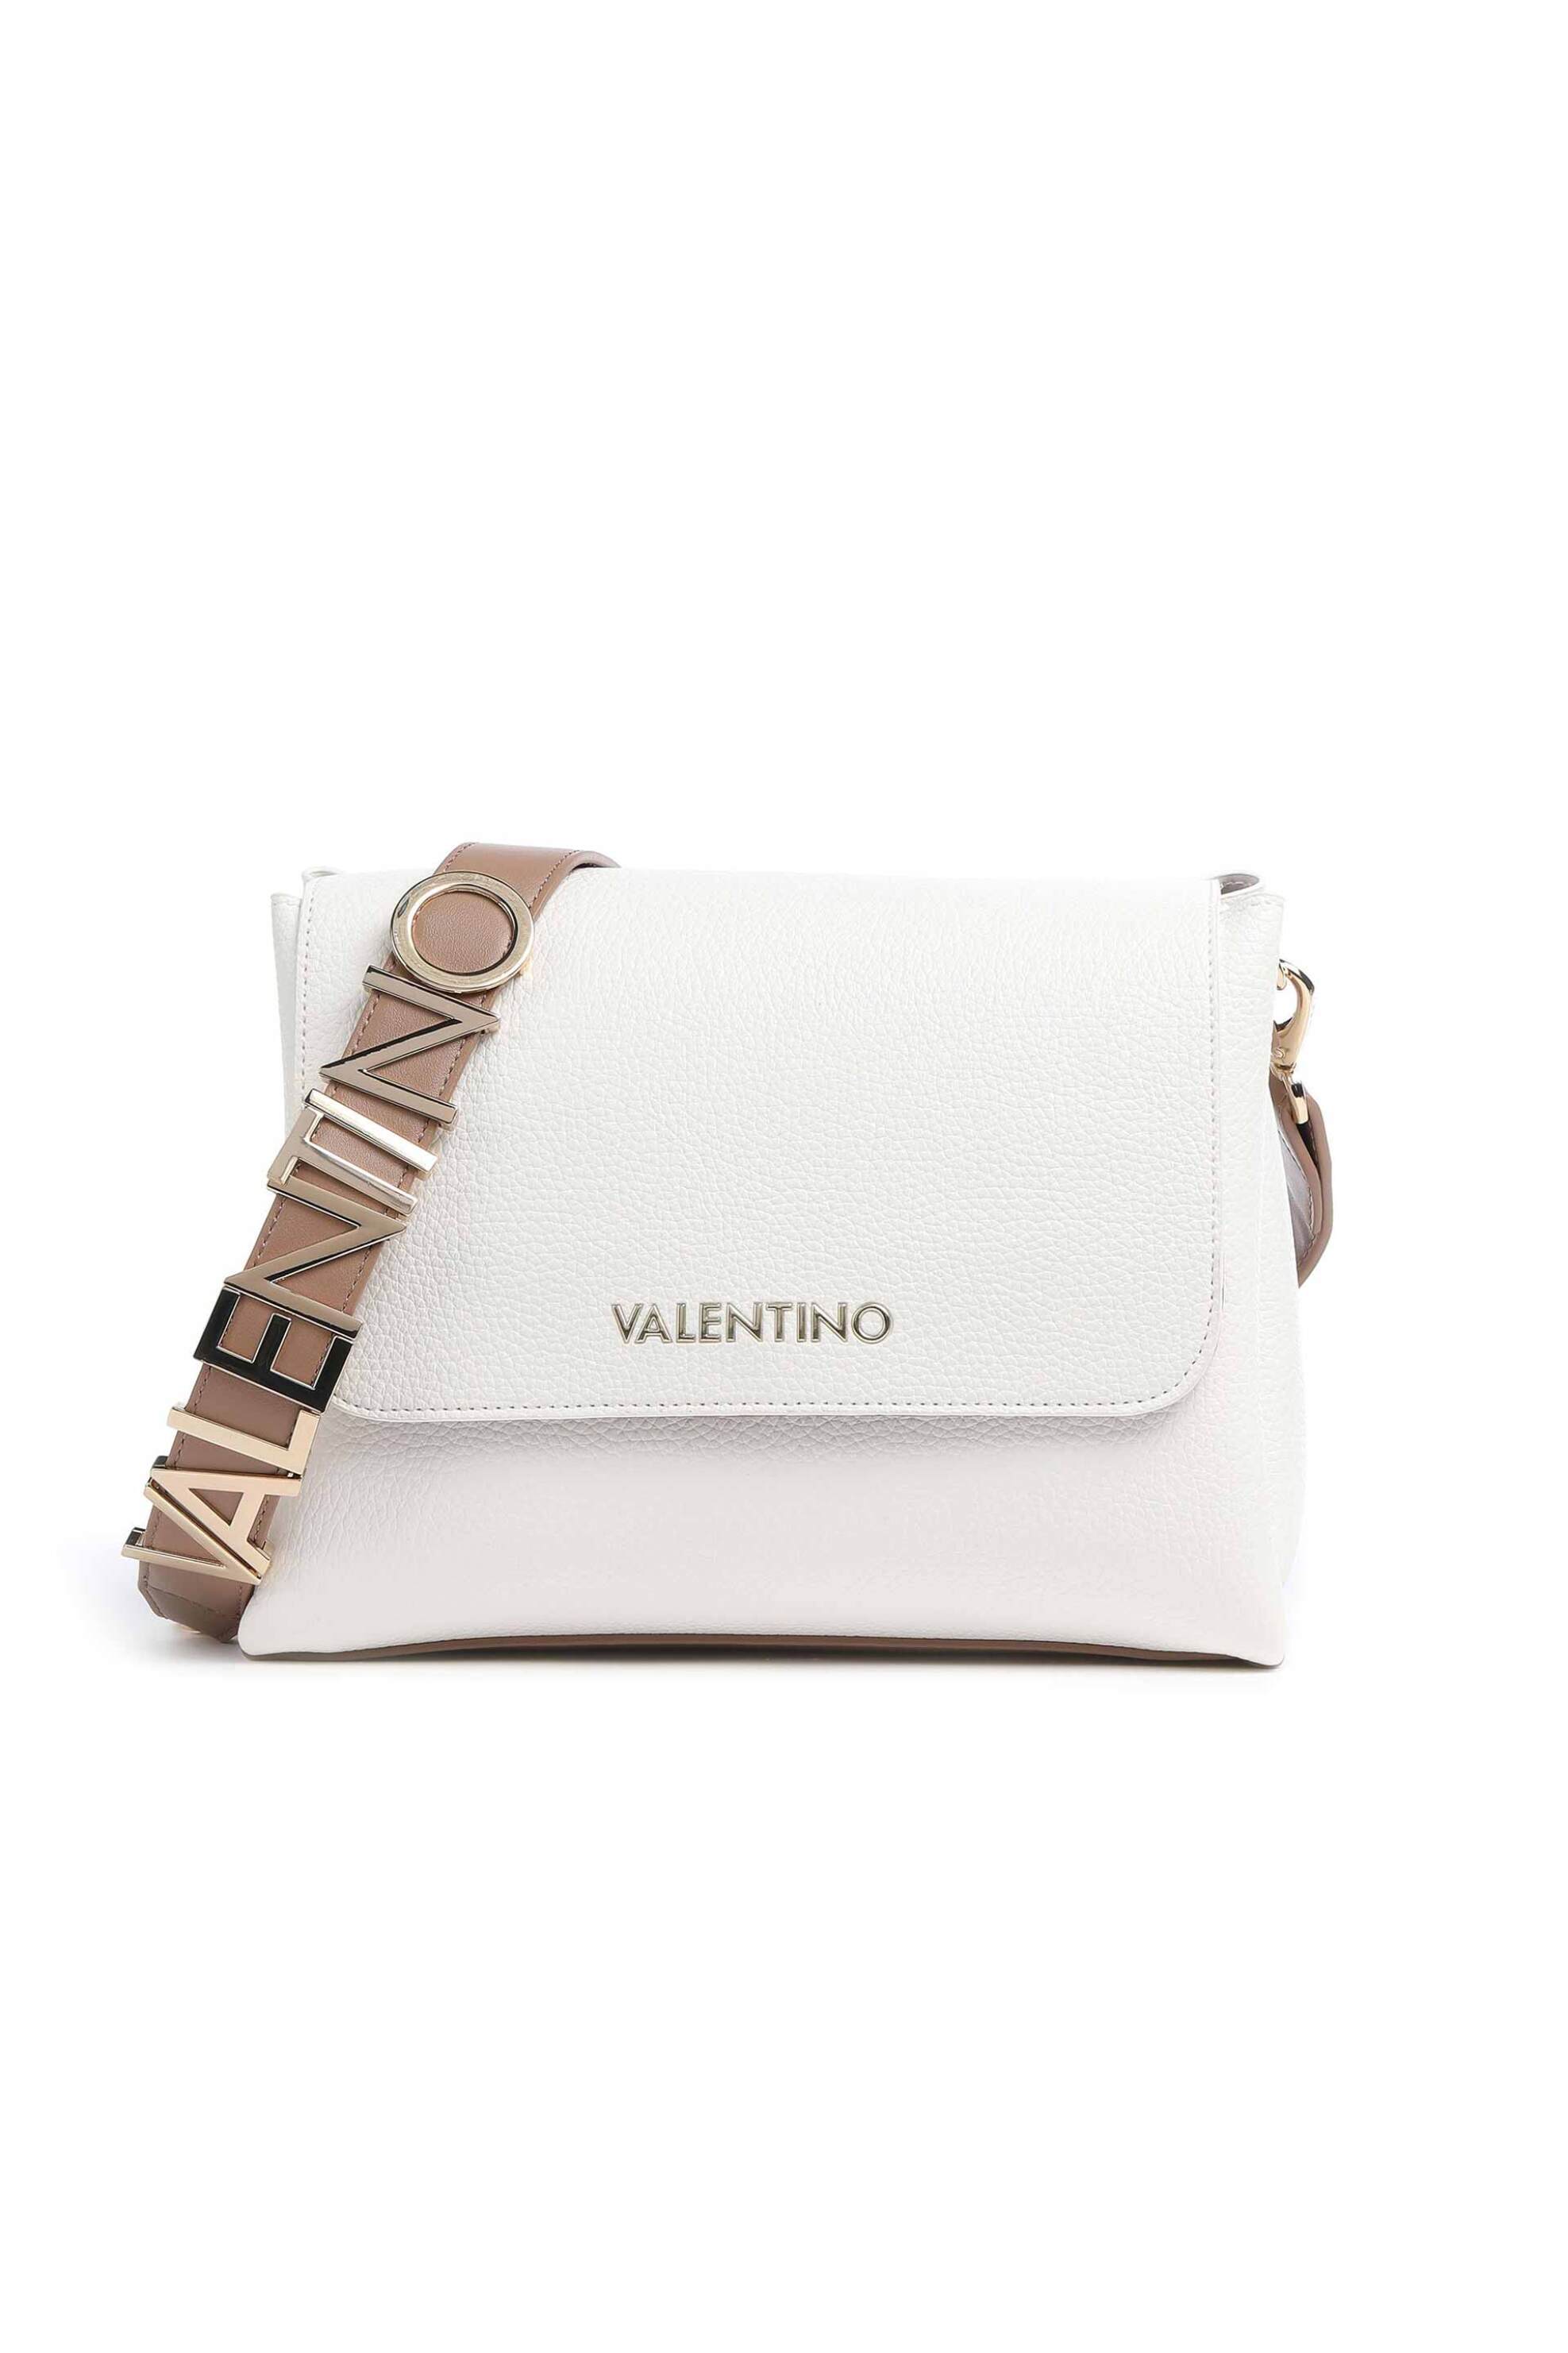 Γυναίκα > ΤΣΑΝΤΕΣ > Τσάντες Ώμου & Shopper Bags Valentino γυναικεία τσάντα ώμου μονόχρωμη με μεταλλικό λογότυπο στο λουρί "Alexia" - 55KVBS5A803/ALE Λευκό